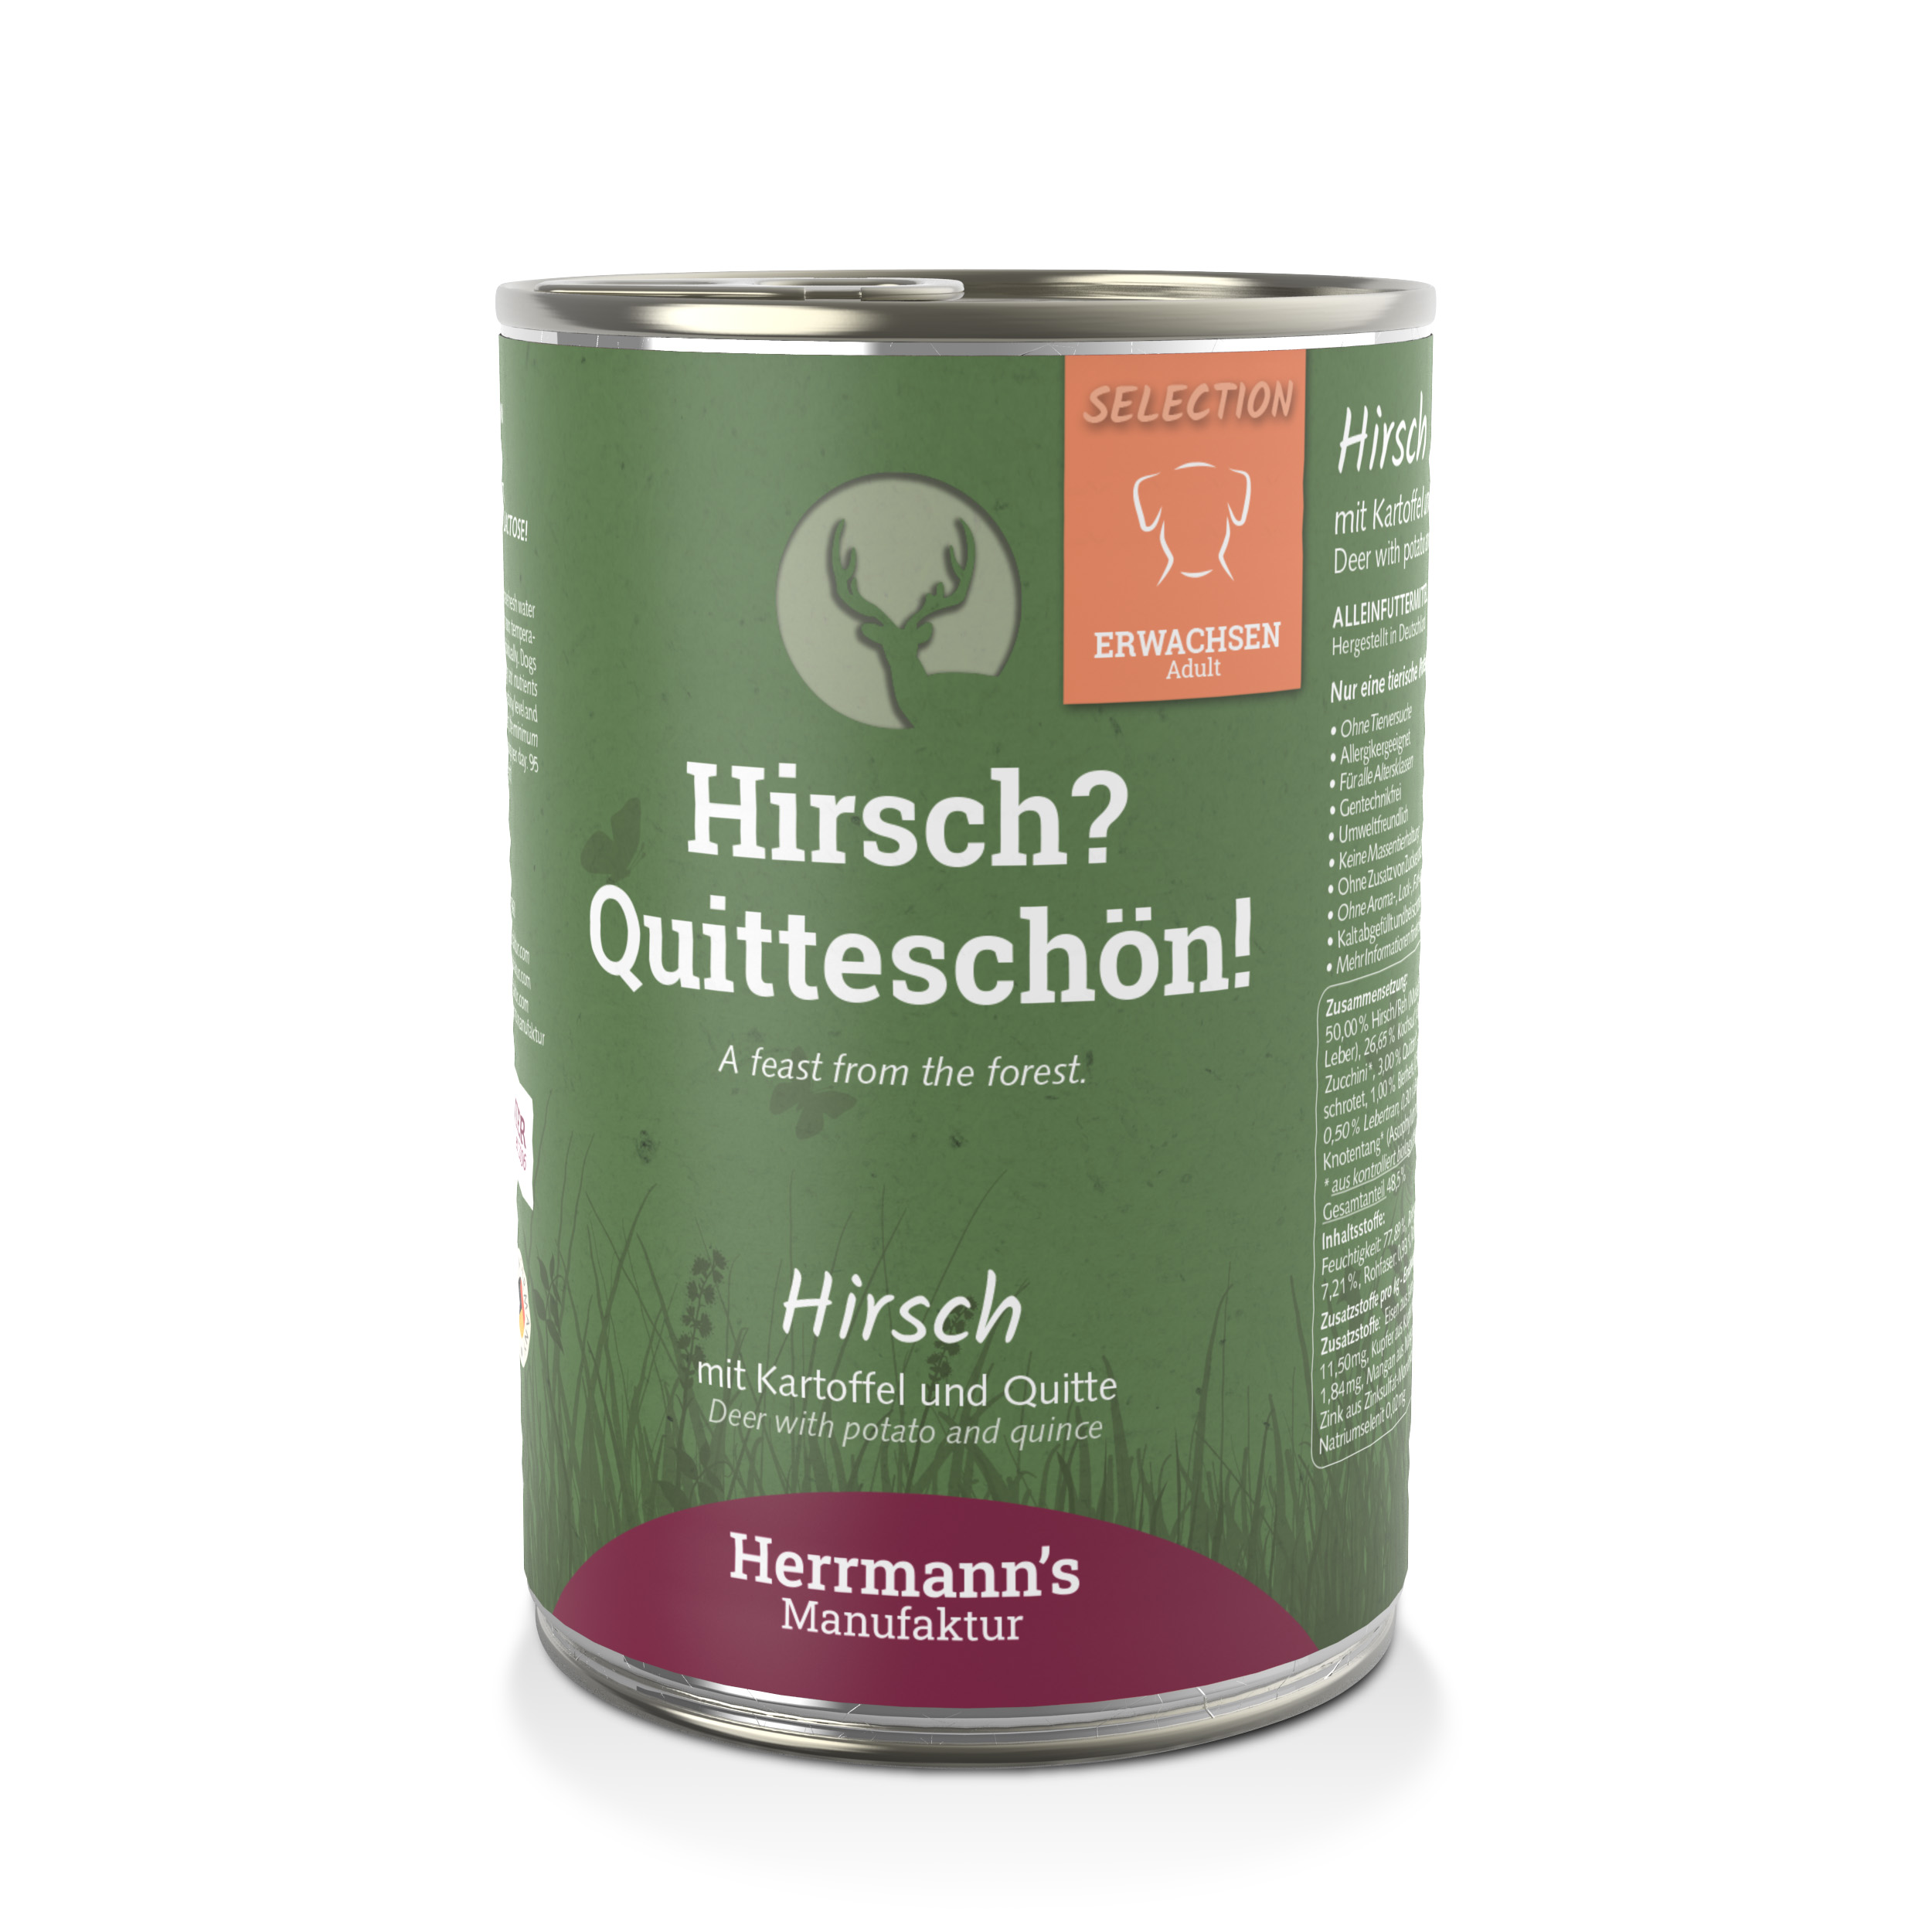 Hundefutter Hirsch NICHT BIO mit Kartoffel und Quitte 400g Herrmann's - Bild 1